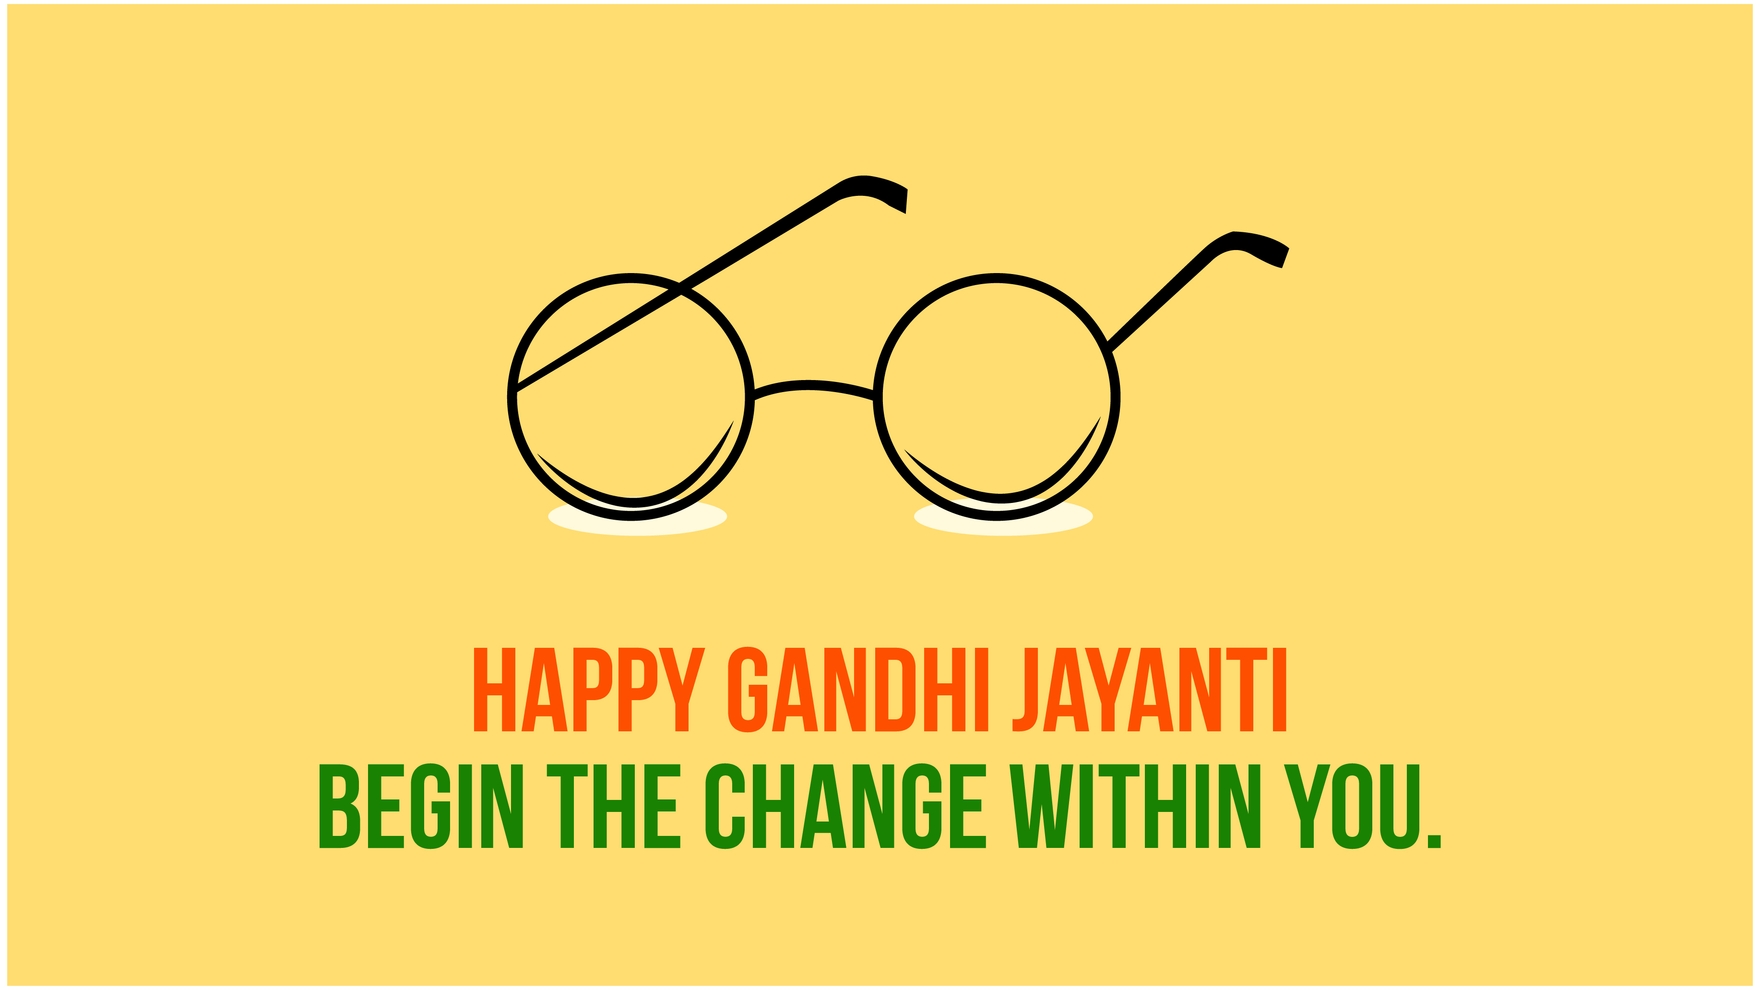 Free Gandhi Jayanti Flyer Background in PDF, Illustrator, PSD, EPS, SVG, JPG, PNG